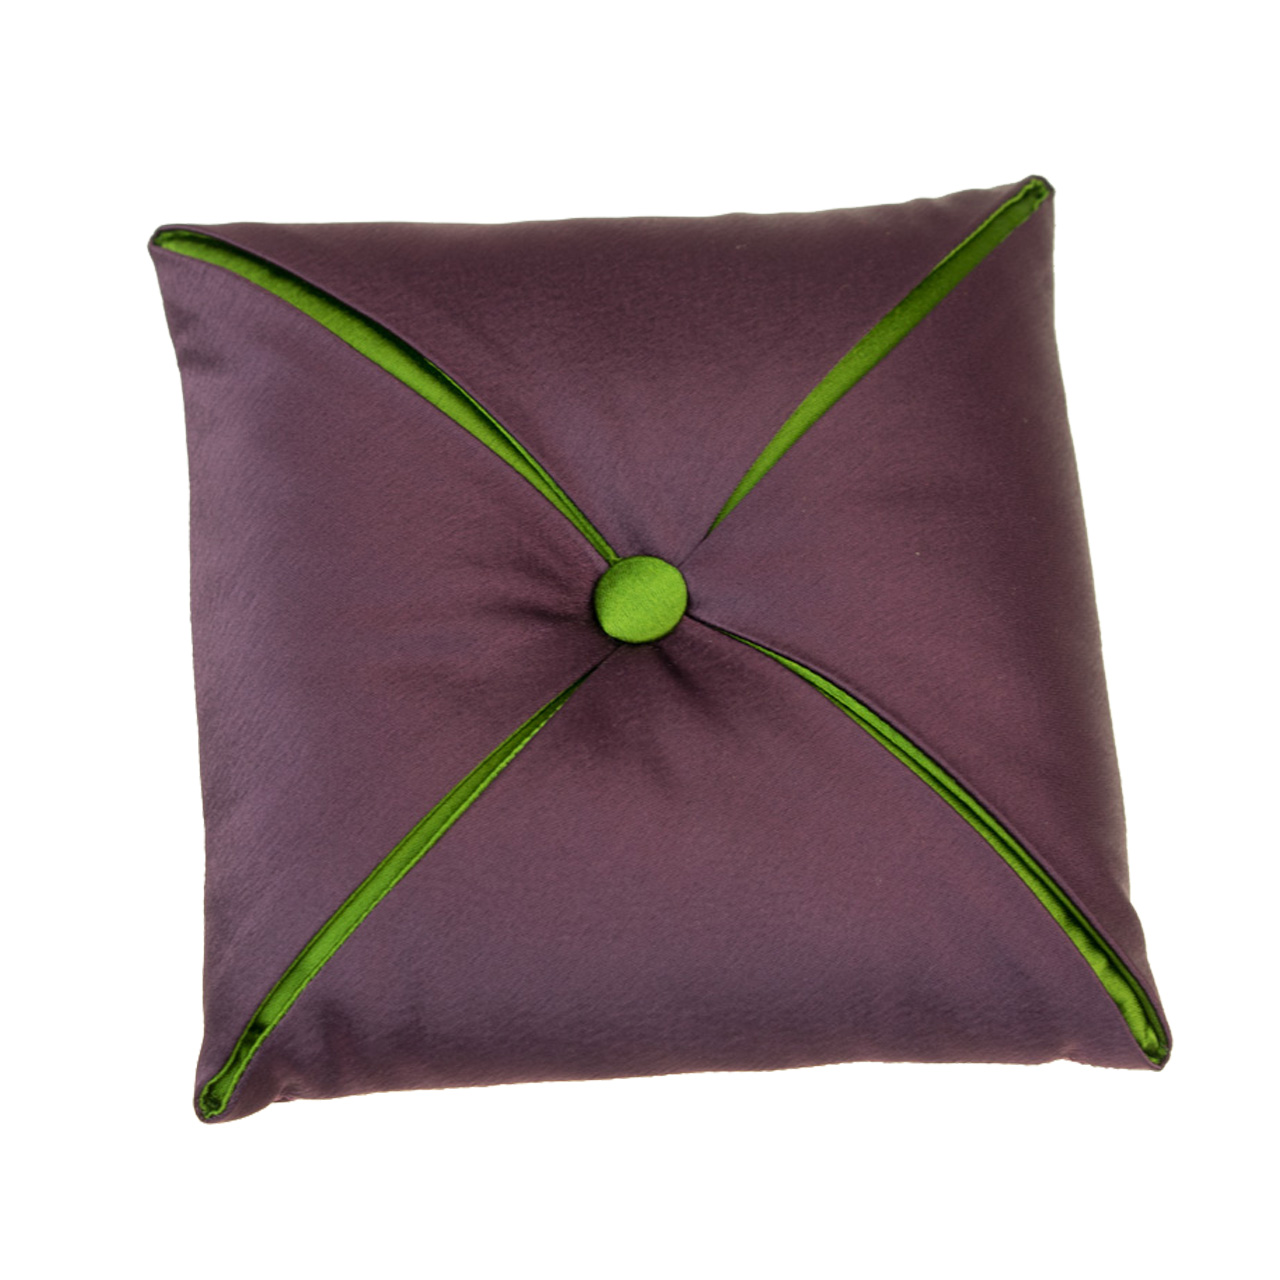 Quadratisches Satin-Kissen in violett / grün Draufsicht